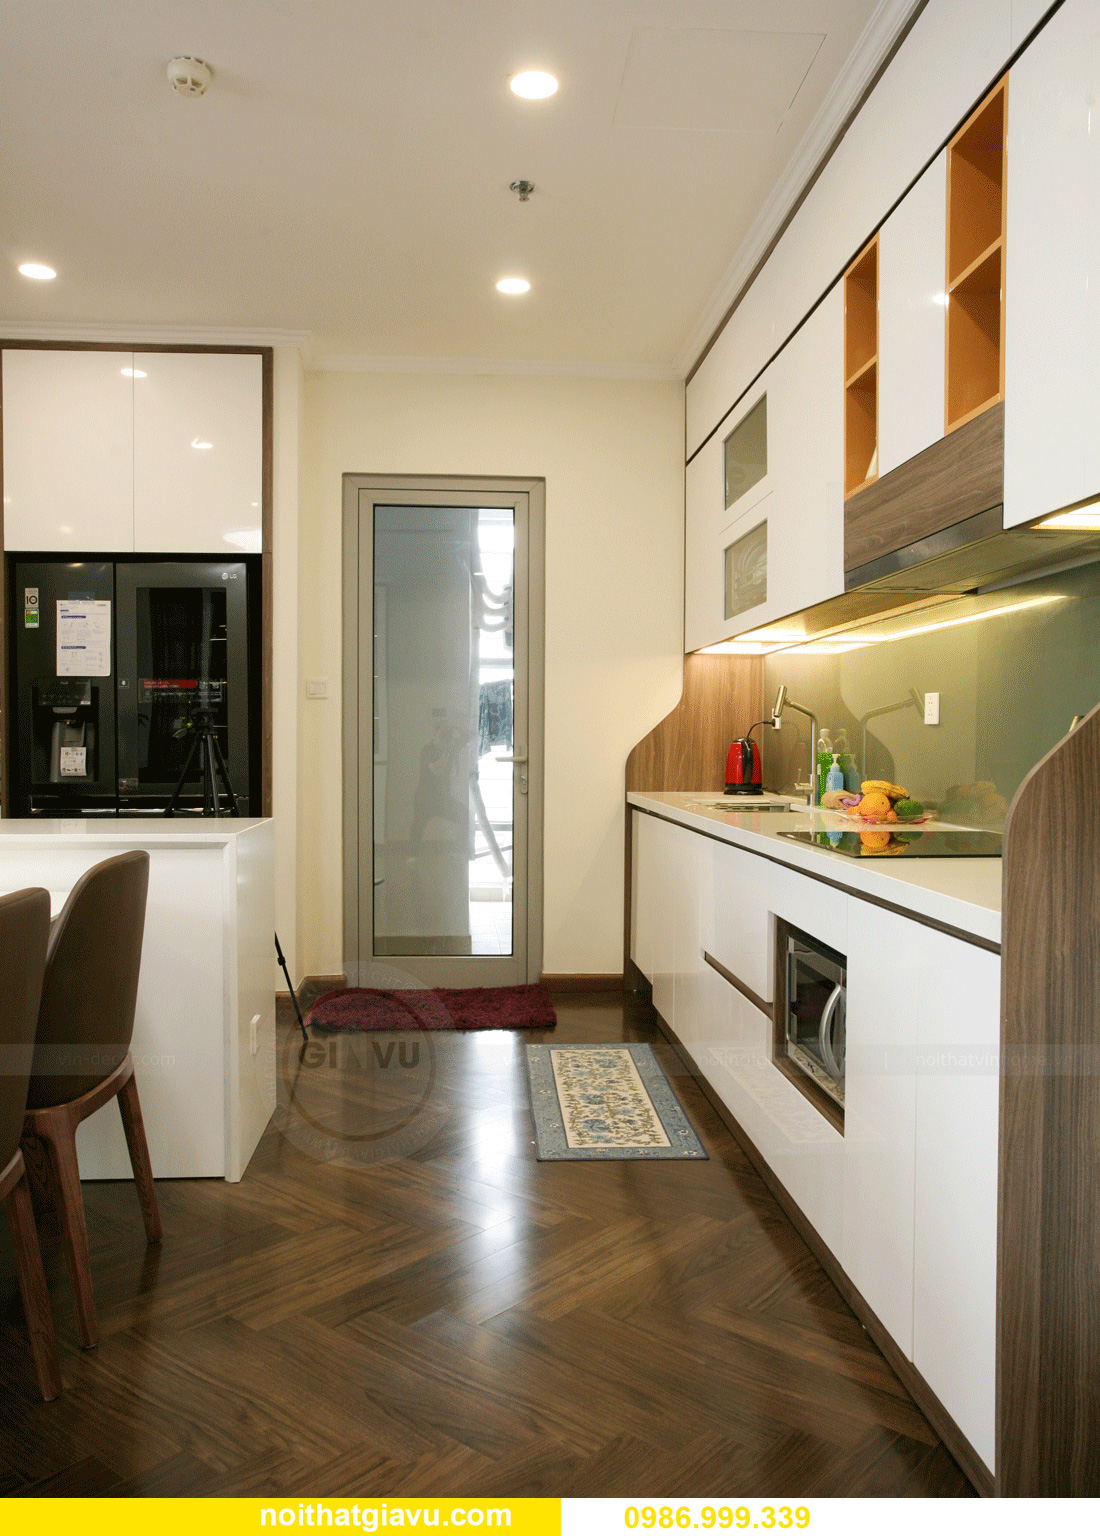 thi công hoàn thiện nội thất căn hộ Smart City đẹp hiện đại 9